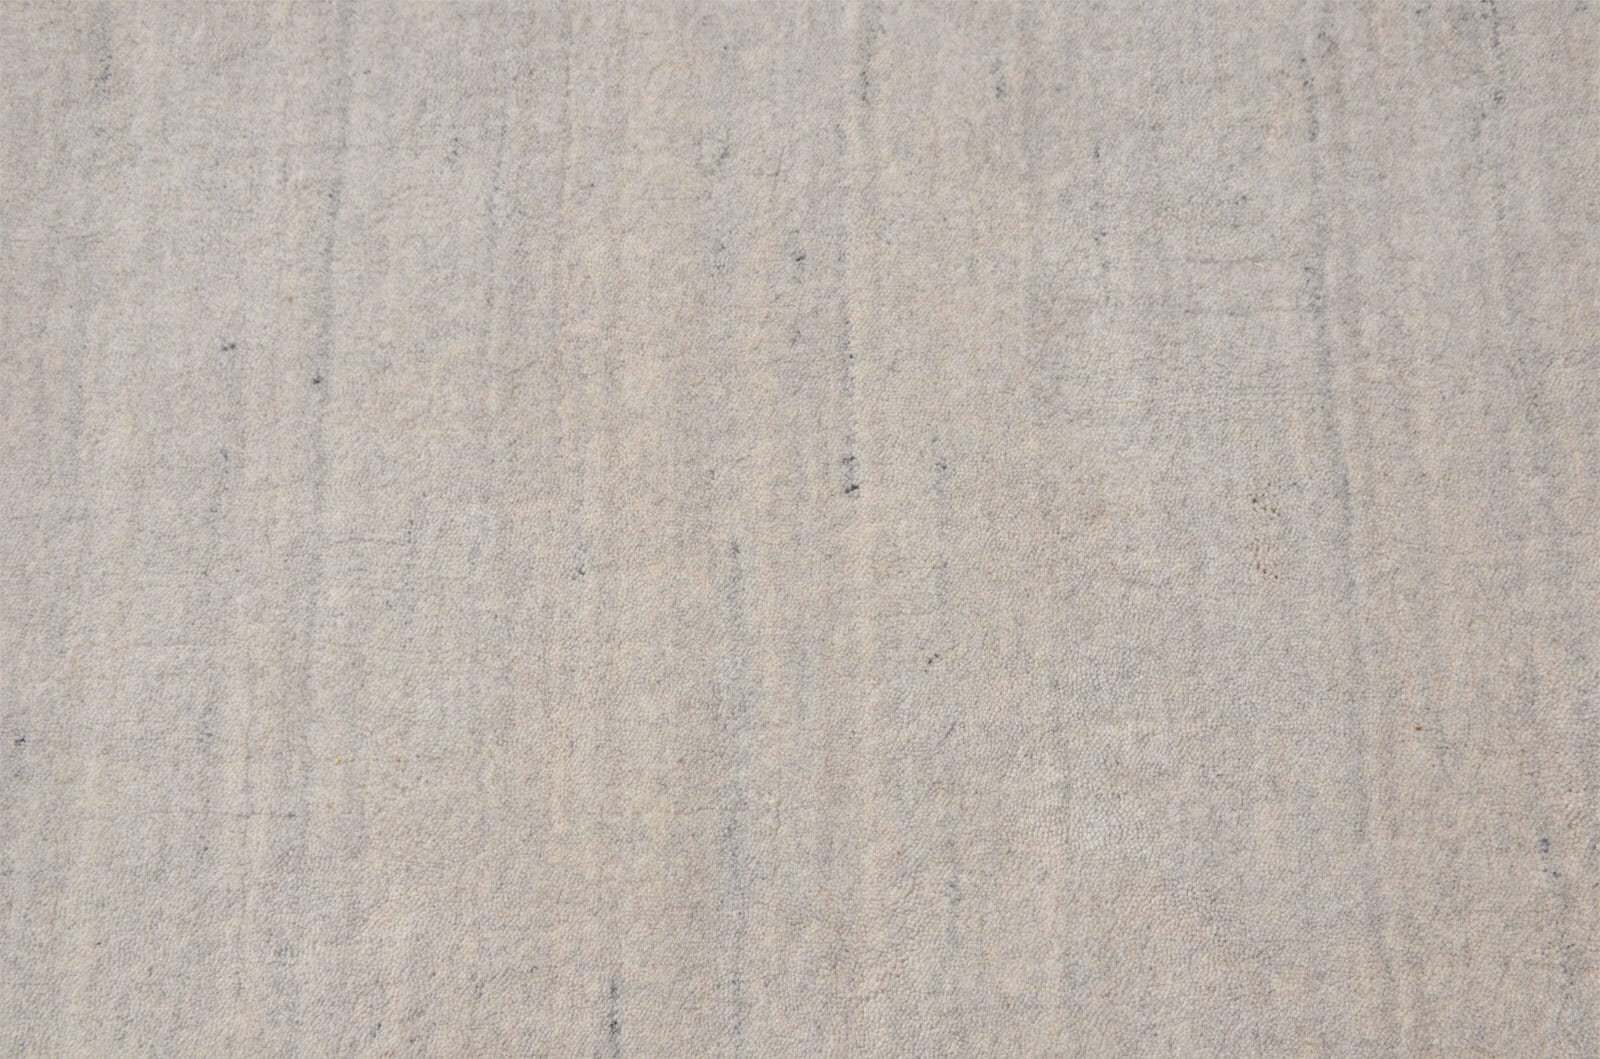 Berber-Teppich ATLAS 90 x 160 cm grau meliert 